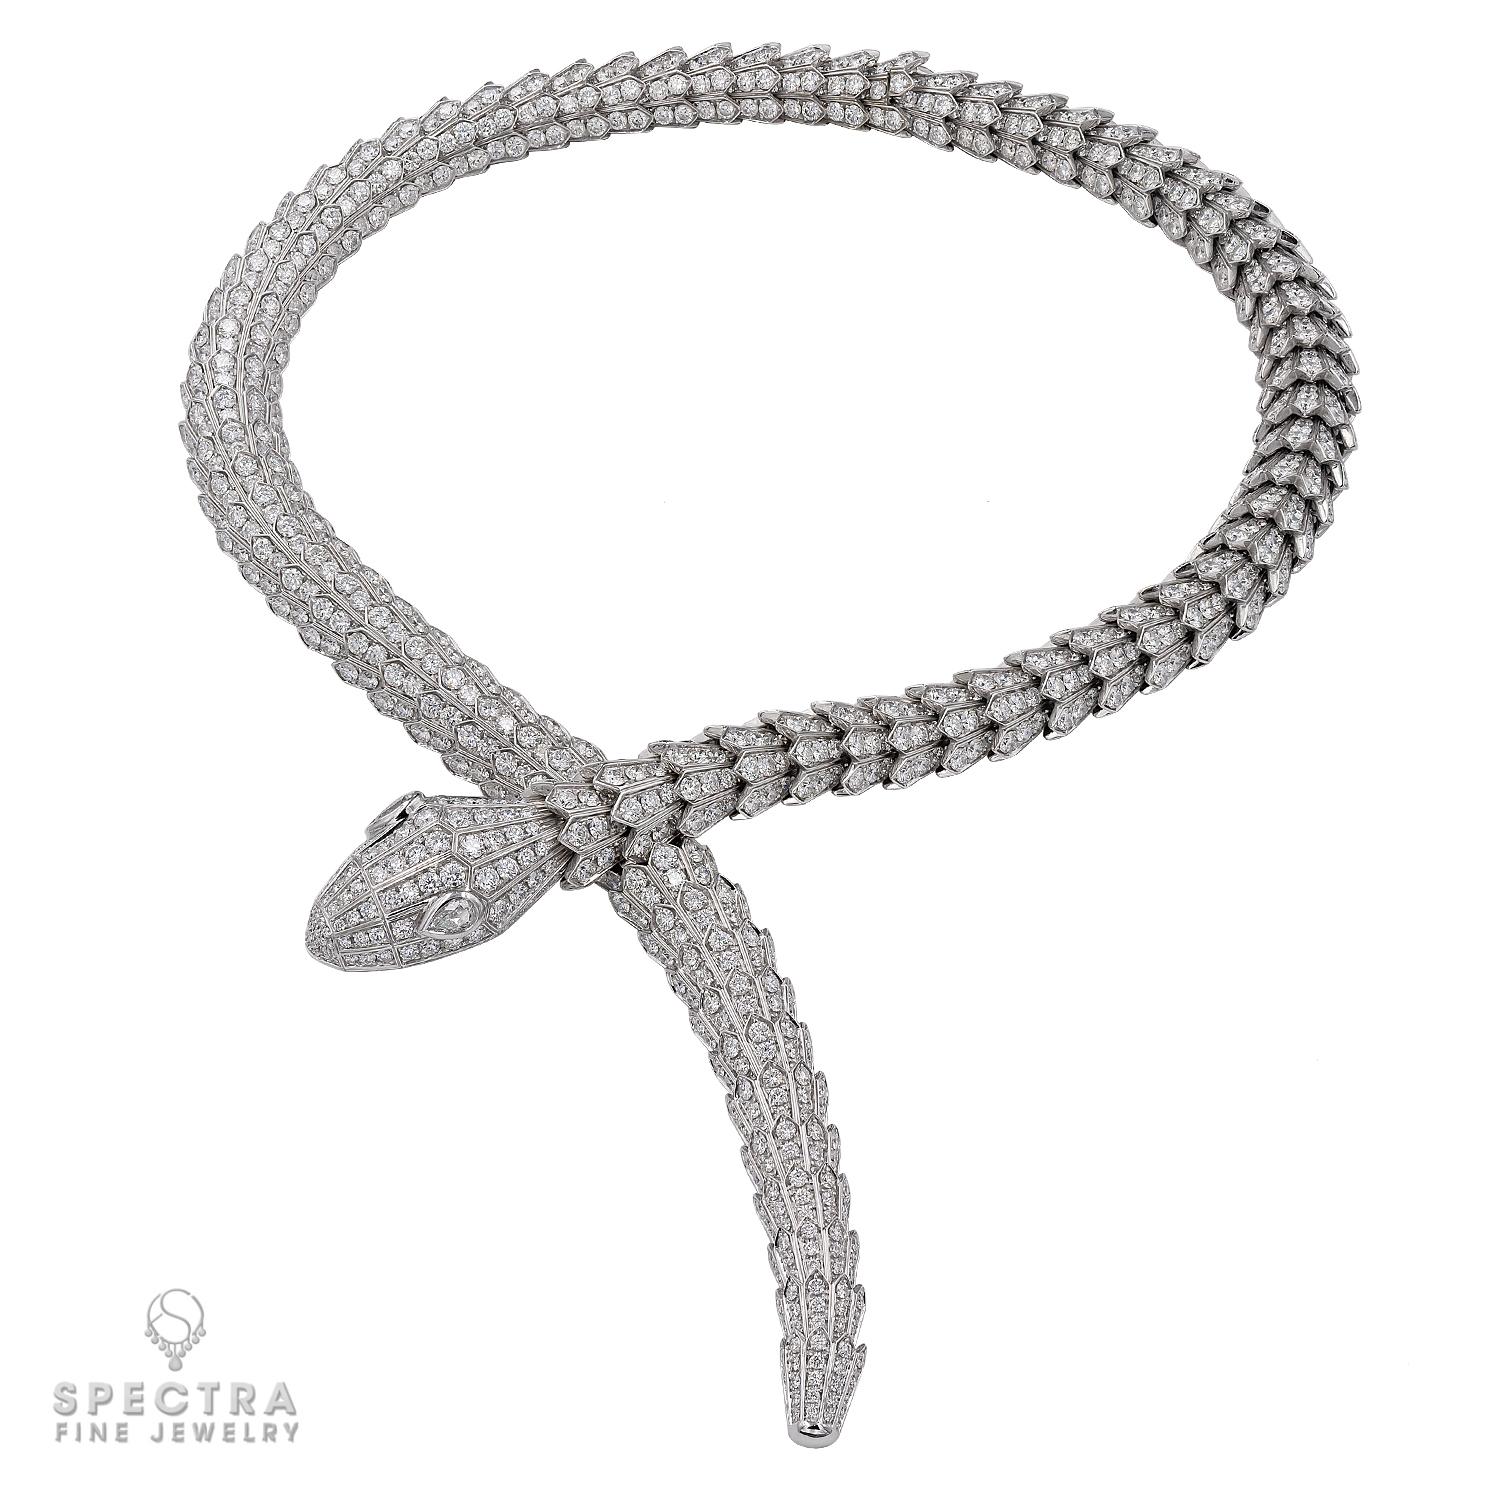 En hommage à son animal spirituel, Bulgari capture le pouvoir de séduction dans ce collier Serpenti Diamond High Jewelry, camouflant la sensualité et la tentation avec un design hypnotique. Sophistiqué et glamour, ce Jewell s'enroule autour du cou